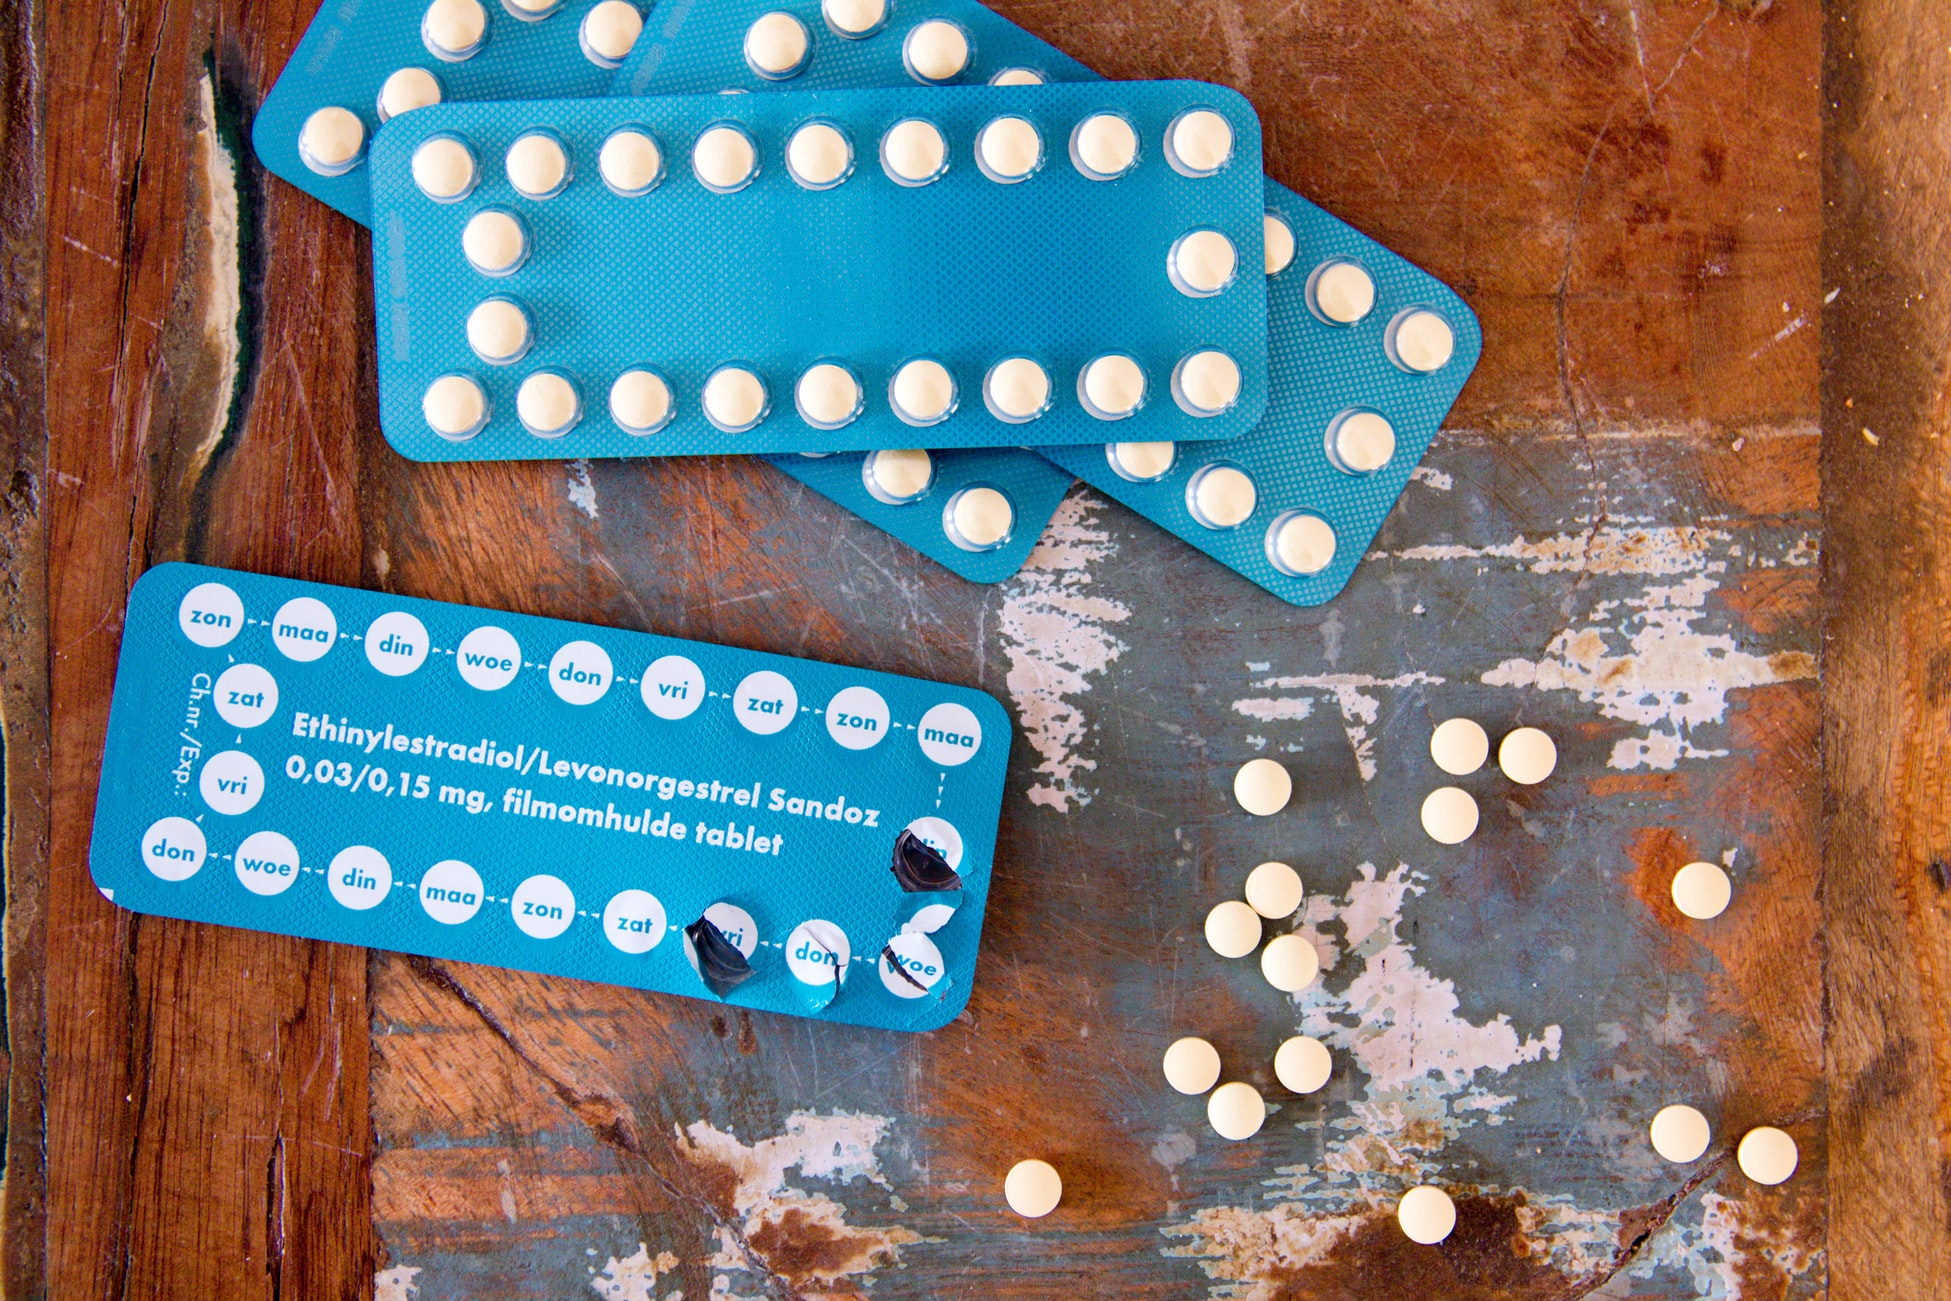 La píldora anticonceptiva afecta a los peces y al agua potable